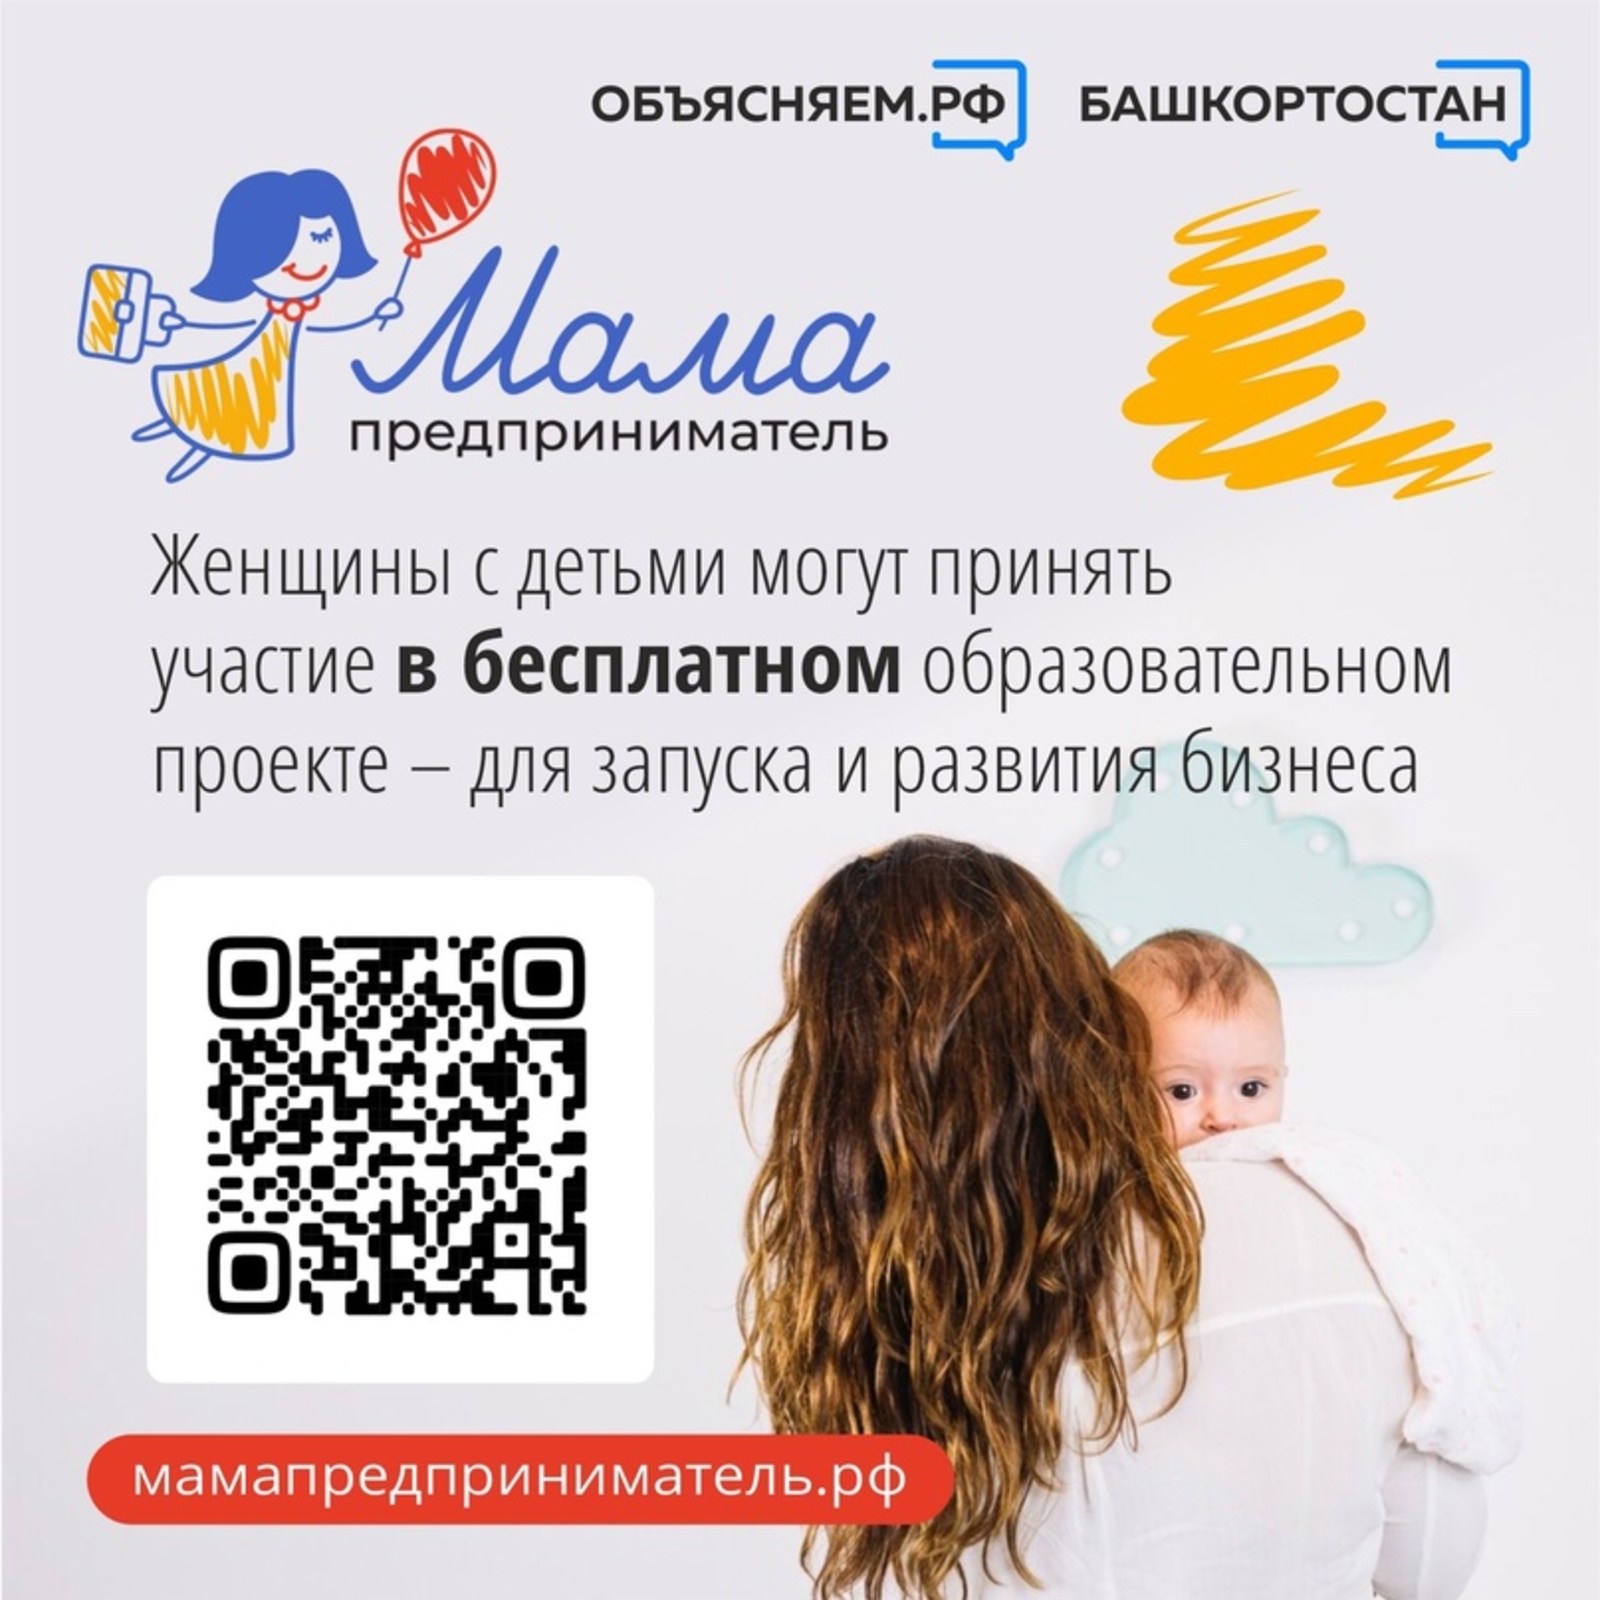 Женщины с детьми из Башкортостана приглашаются для участия  в проекте «Мама-предприниматель»